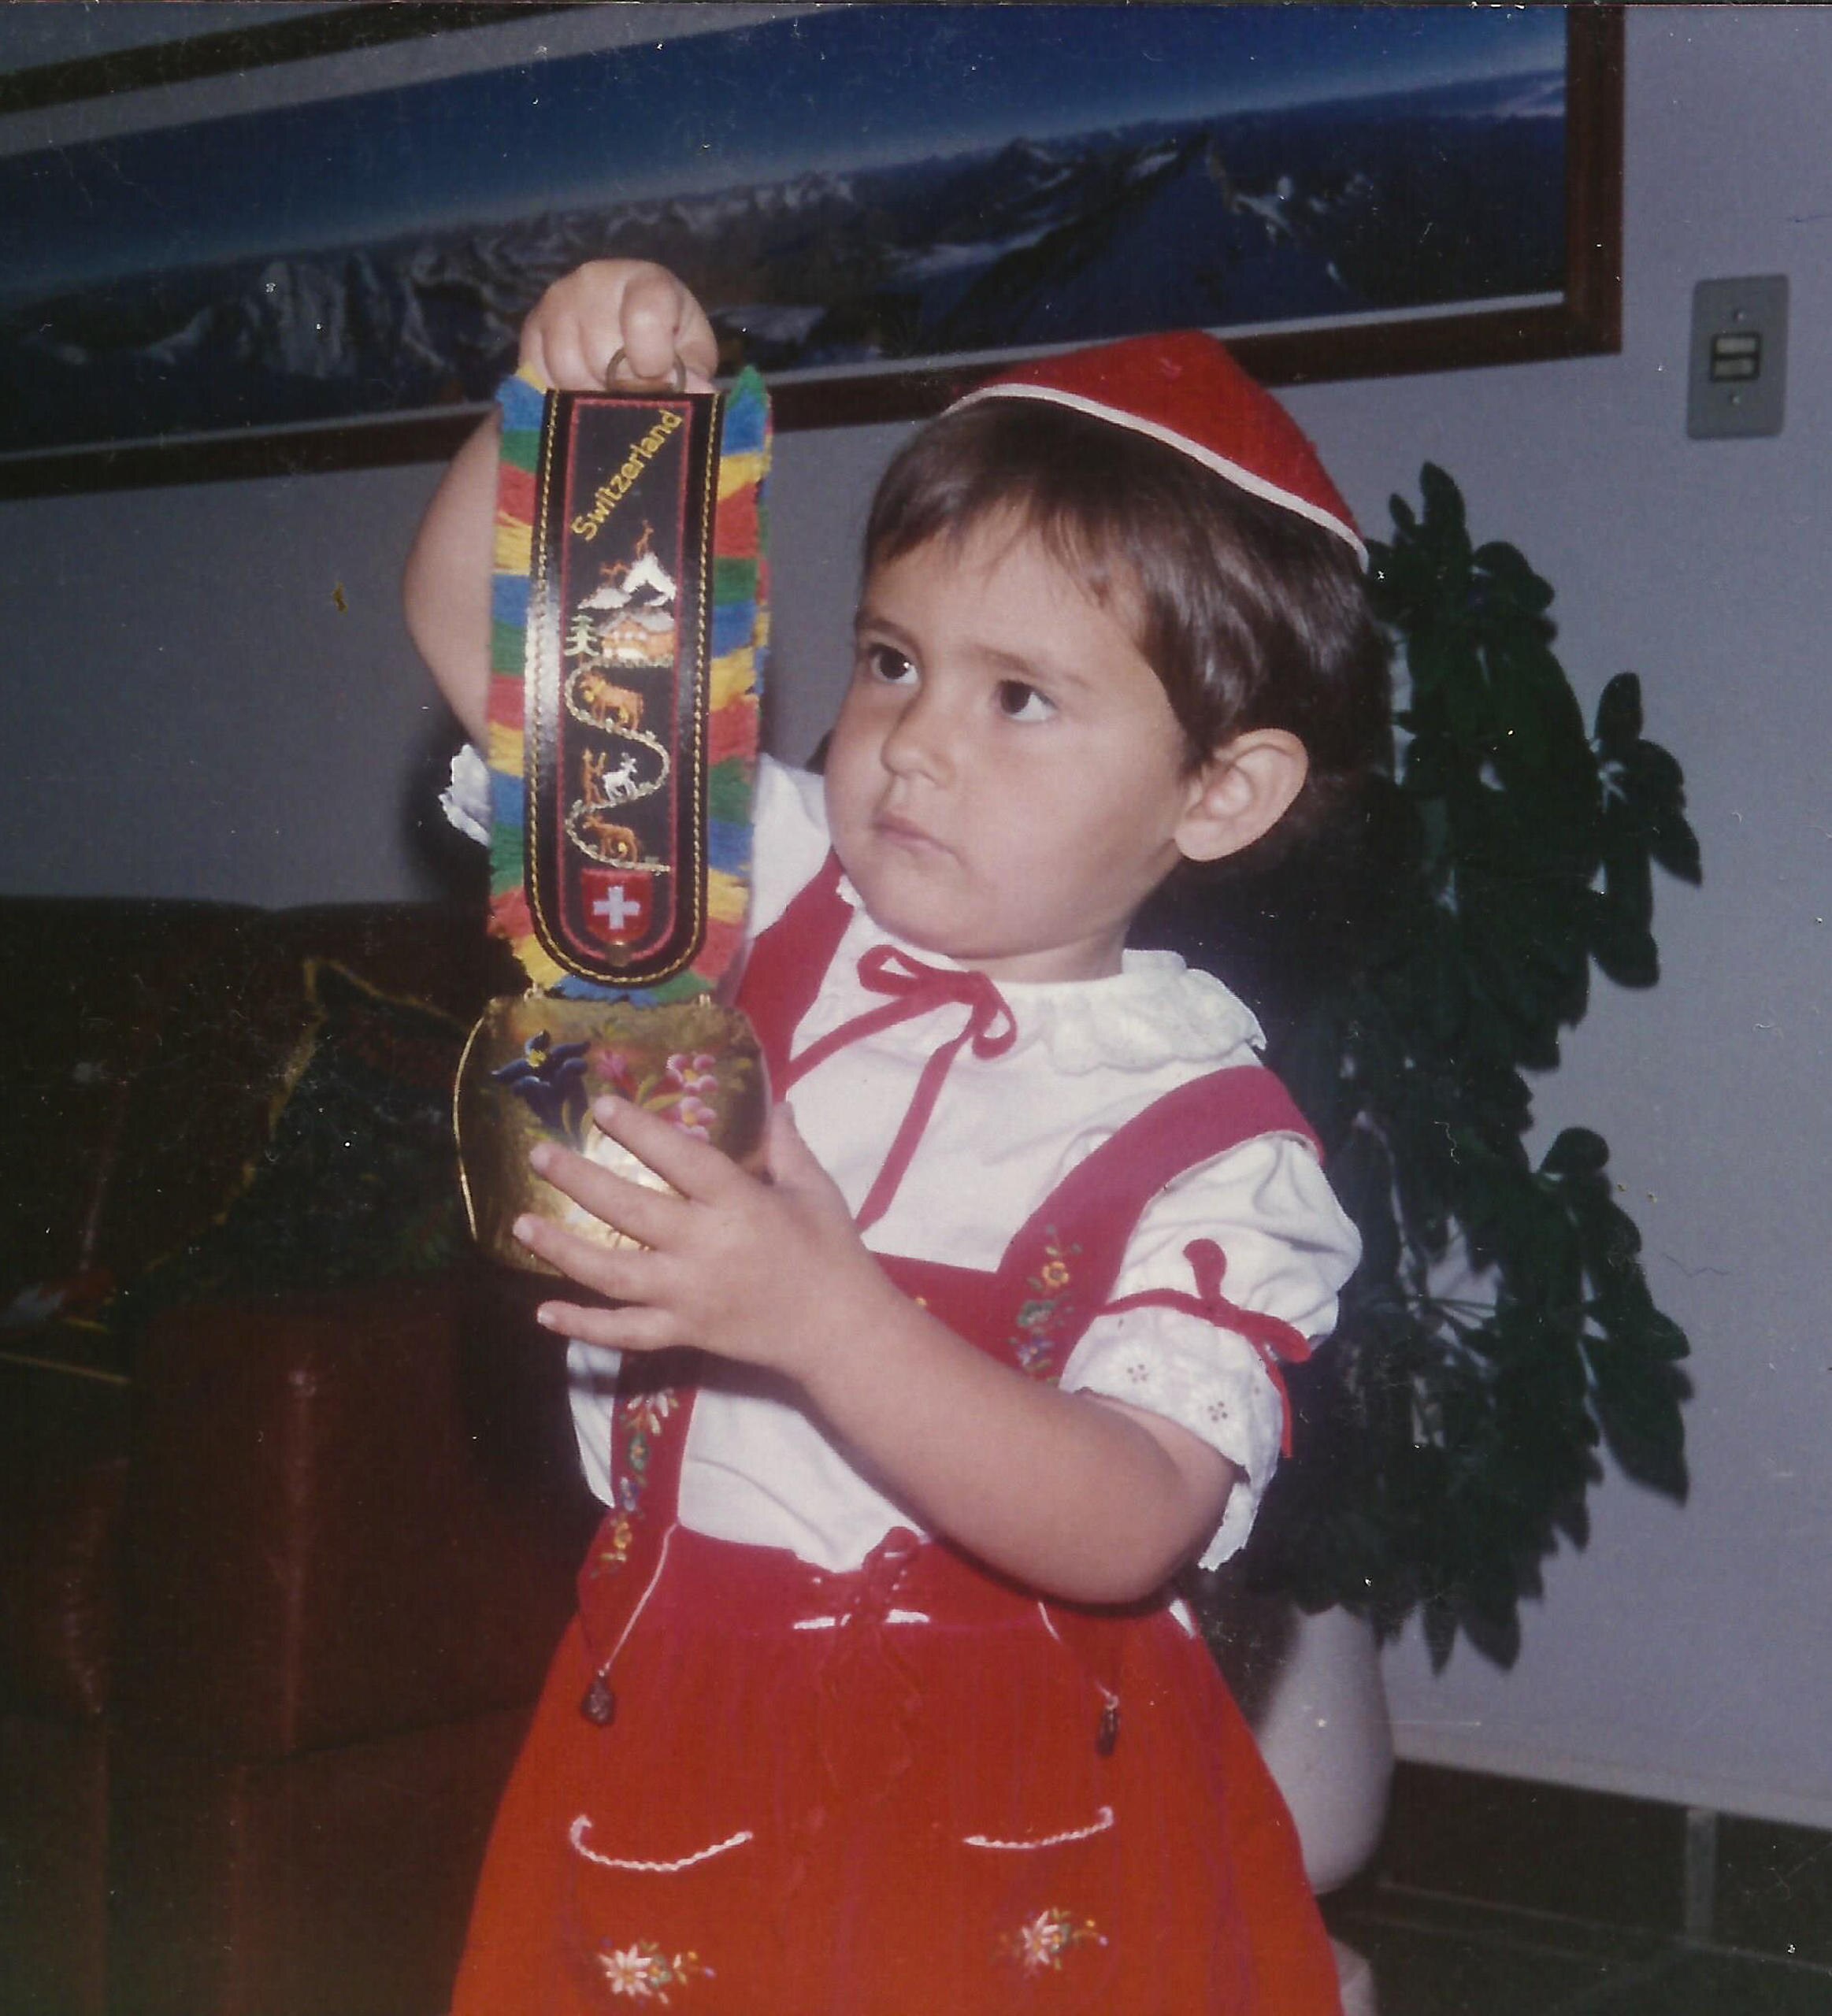 bambina che indossa un costume tradizionale e tiene in mano una campana decorata.